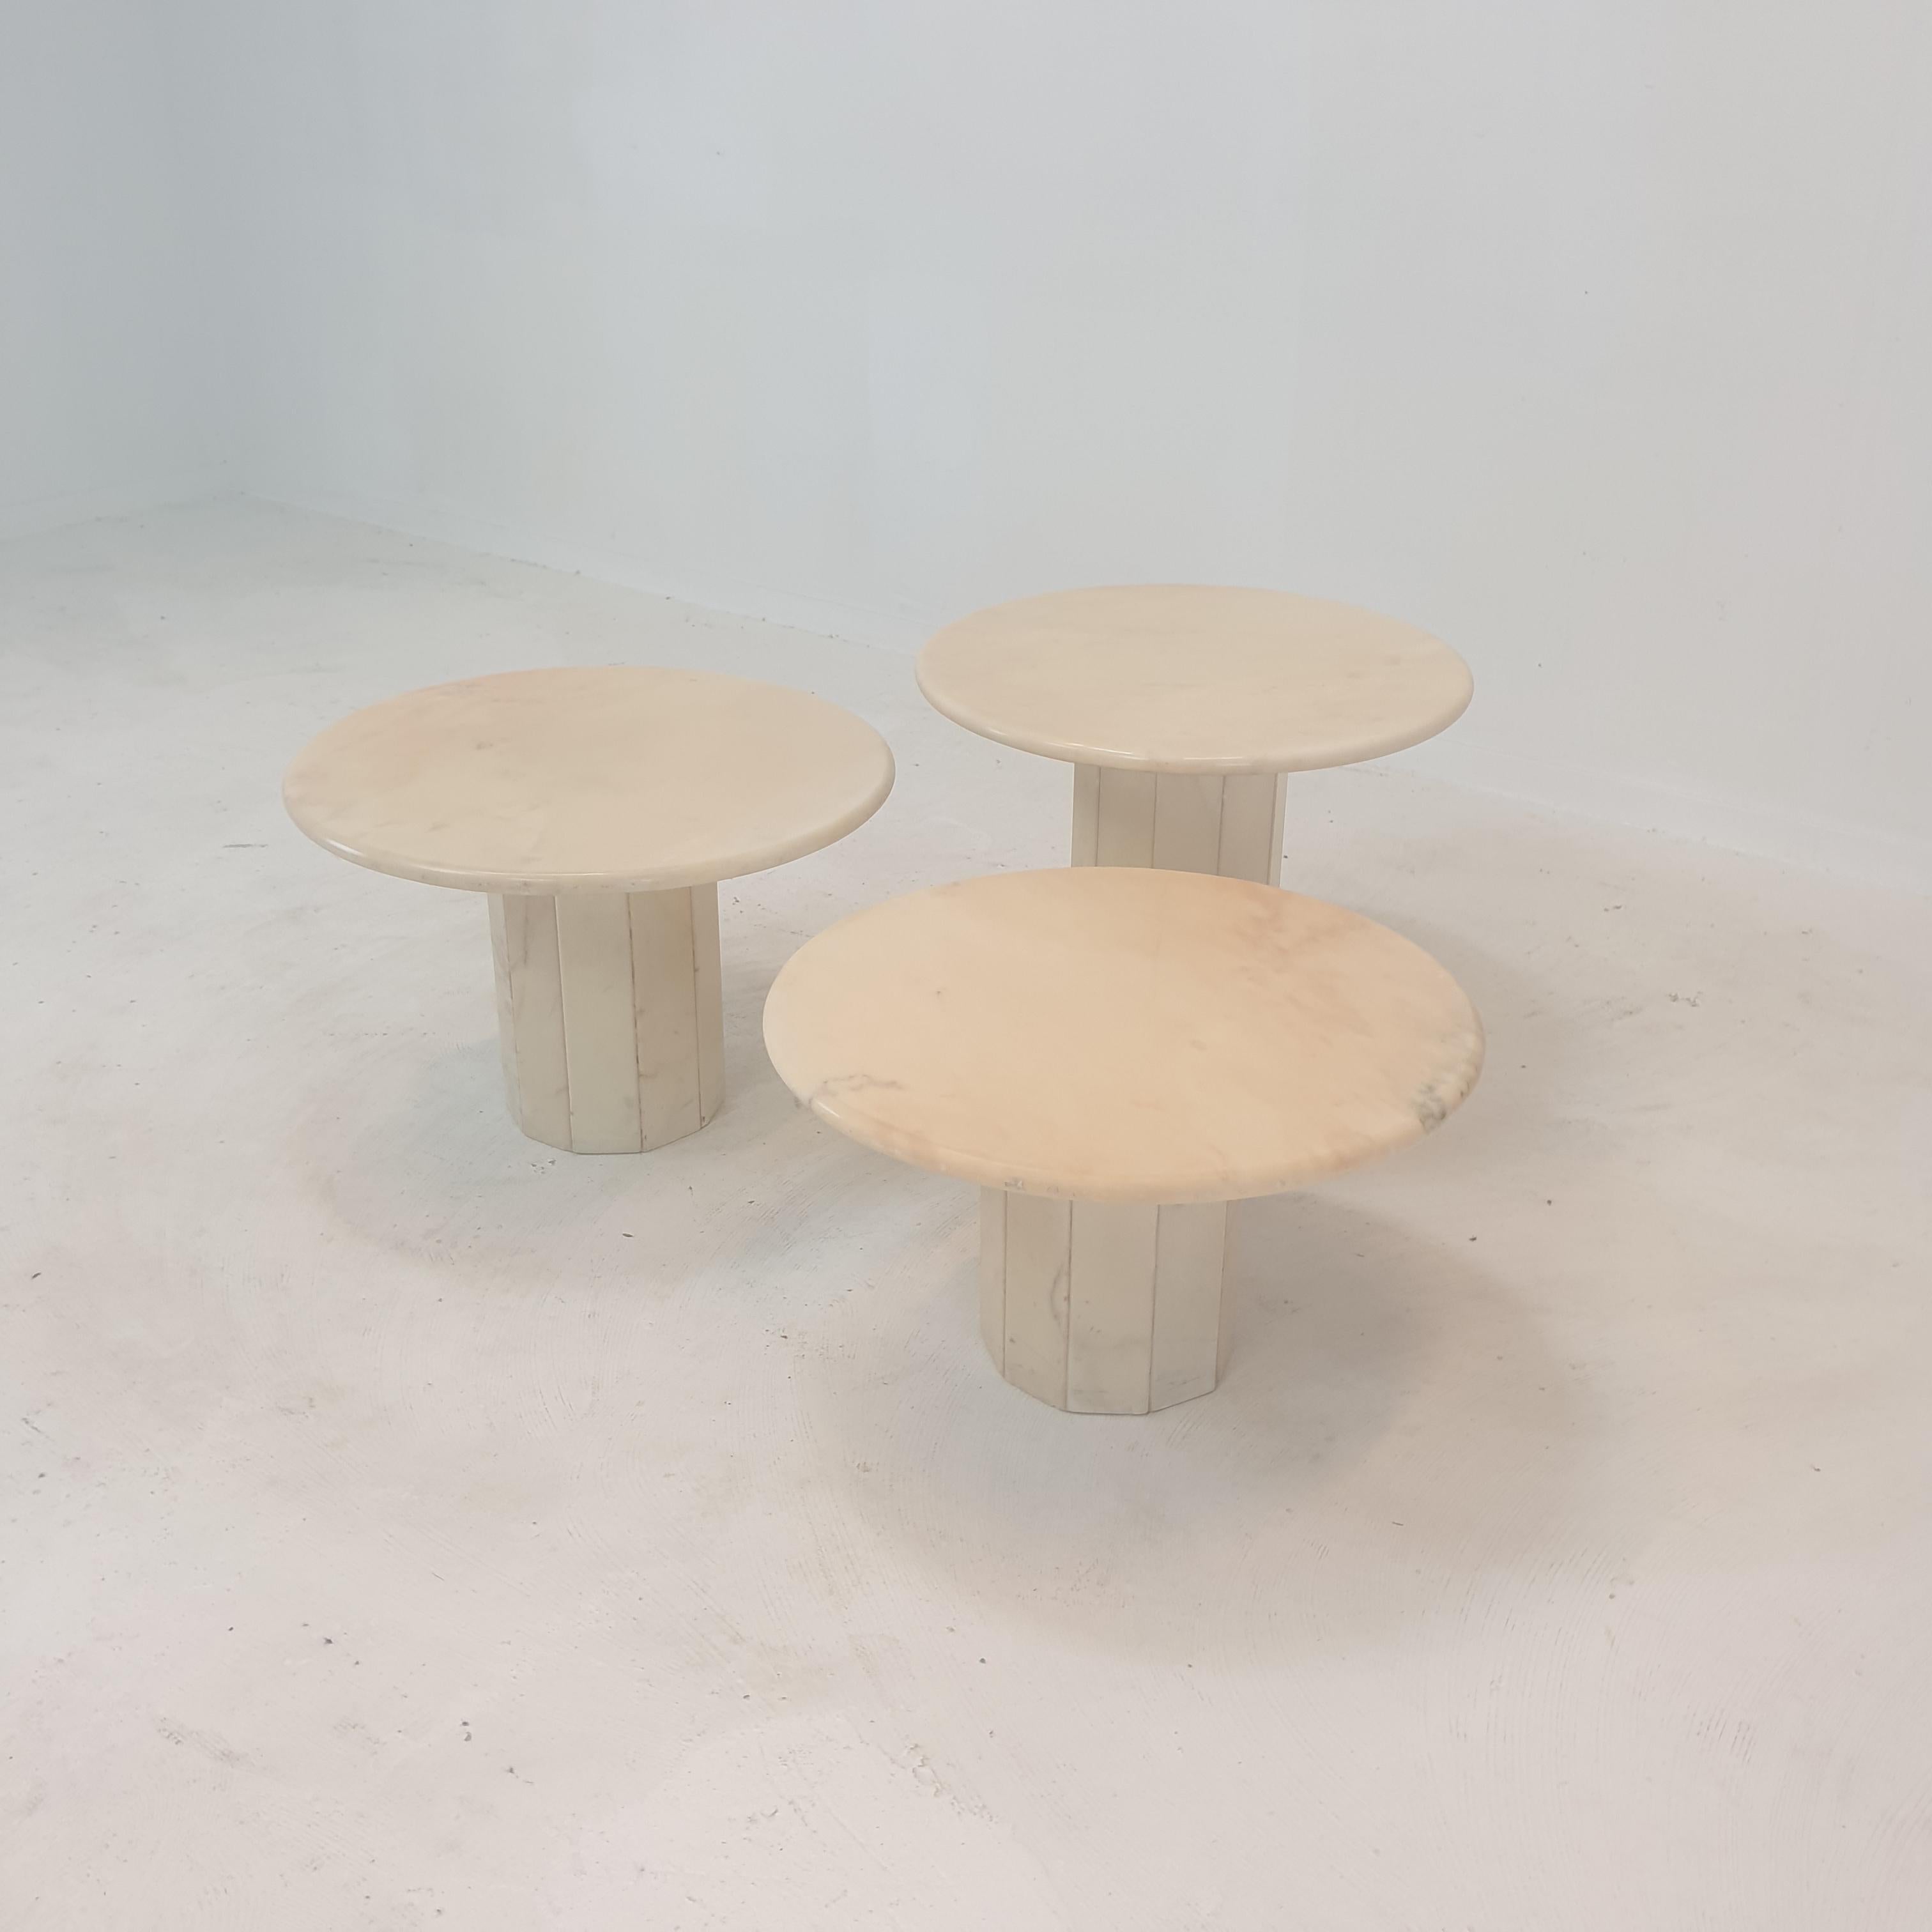 Bel ensemble de 3 tables basses ou tables d'appoint italiennes, fabriquées à la main en marbre. 
Ils peuvent être utilisés à l'intérieur ou à l'extérieur de la maison.

Les tables de ce superbe ensemble ont toutes une hauteur différente, de sorte